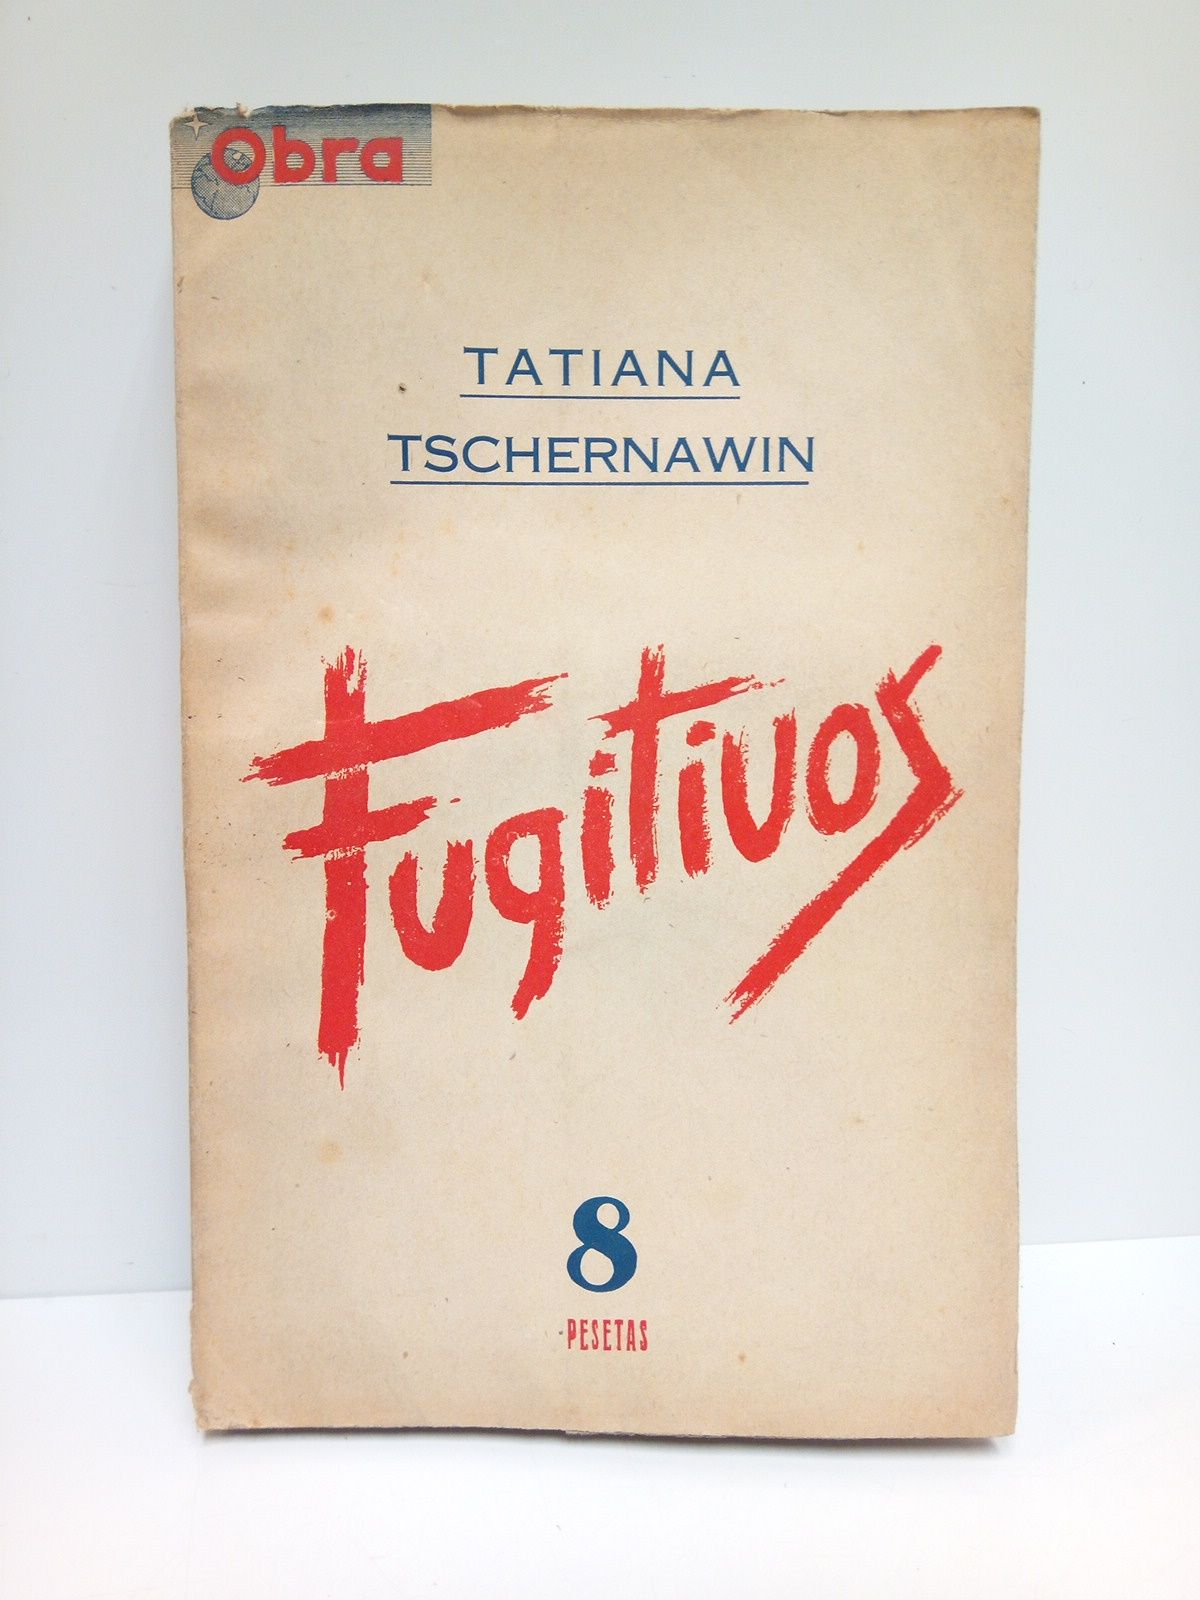 OBRA - Obra. Revista Internacional. N 1, Mayo 1946. [INCLUYE] Tatiana Tschernawin.-  Fugitivos (OBRA COMPLETA de 143 pags.)